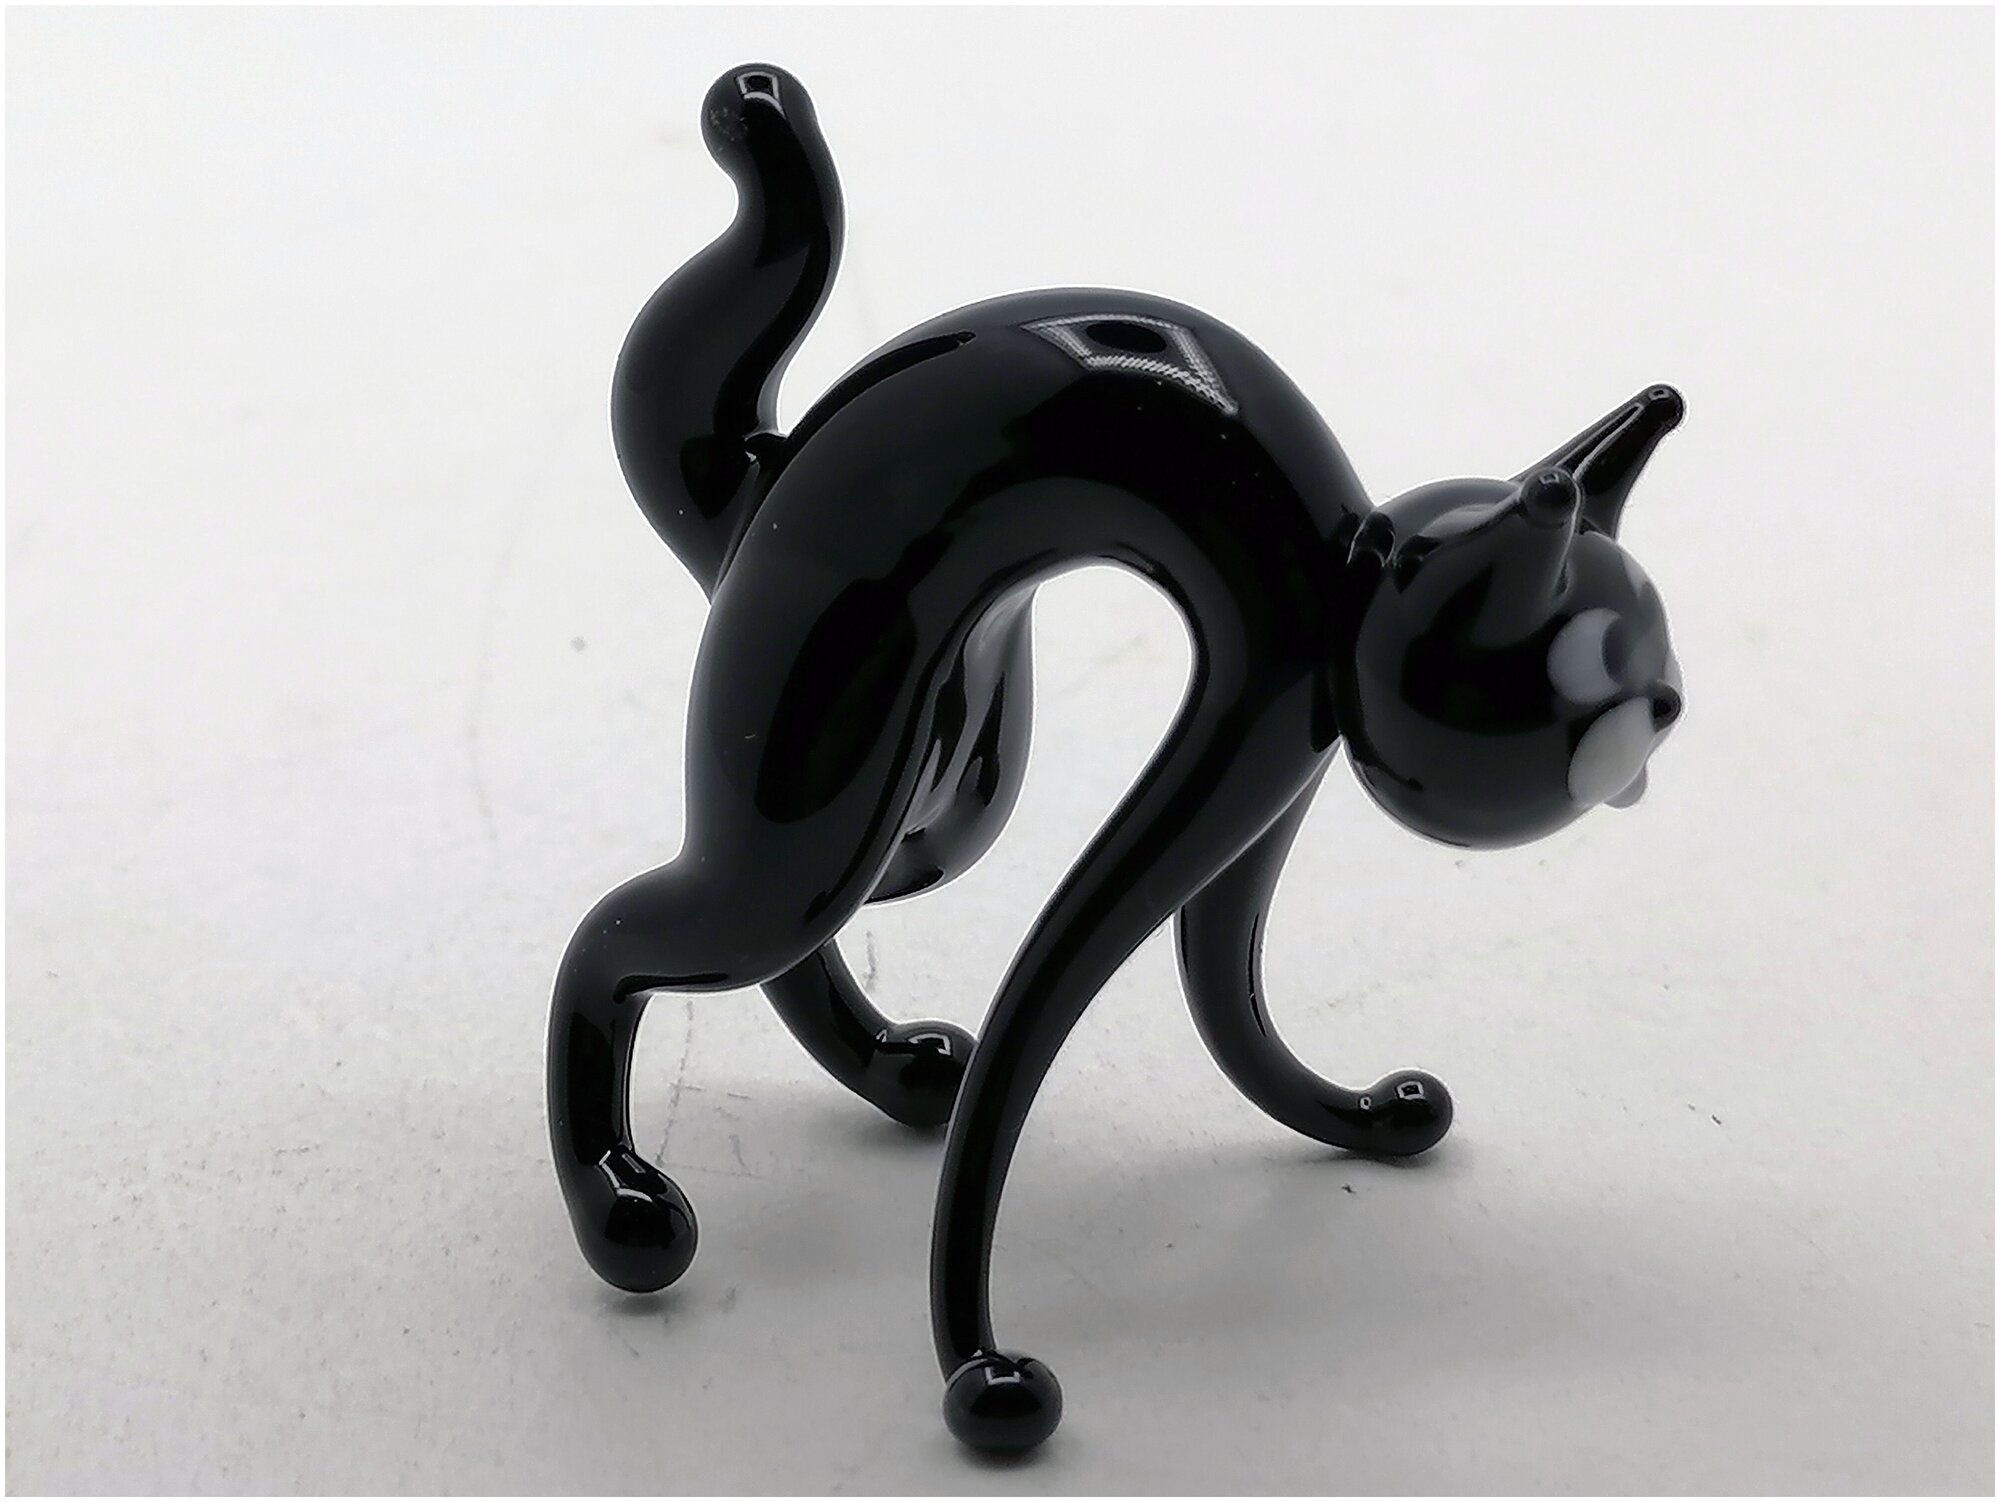 Кошка/ статуэтка стеклянная/ сувенир из стекла/ кошка сувенир/ фигурка из стекла